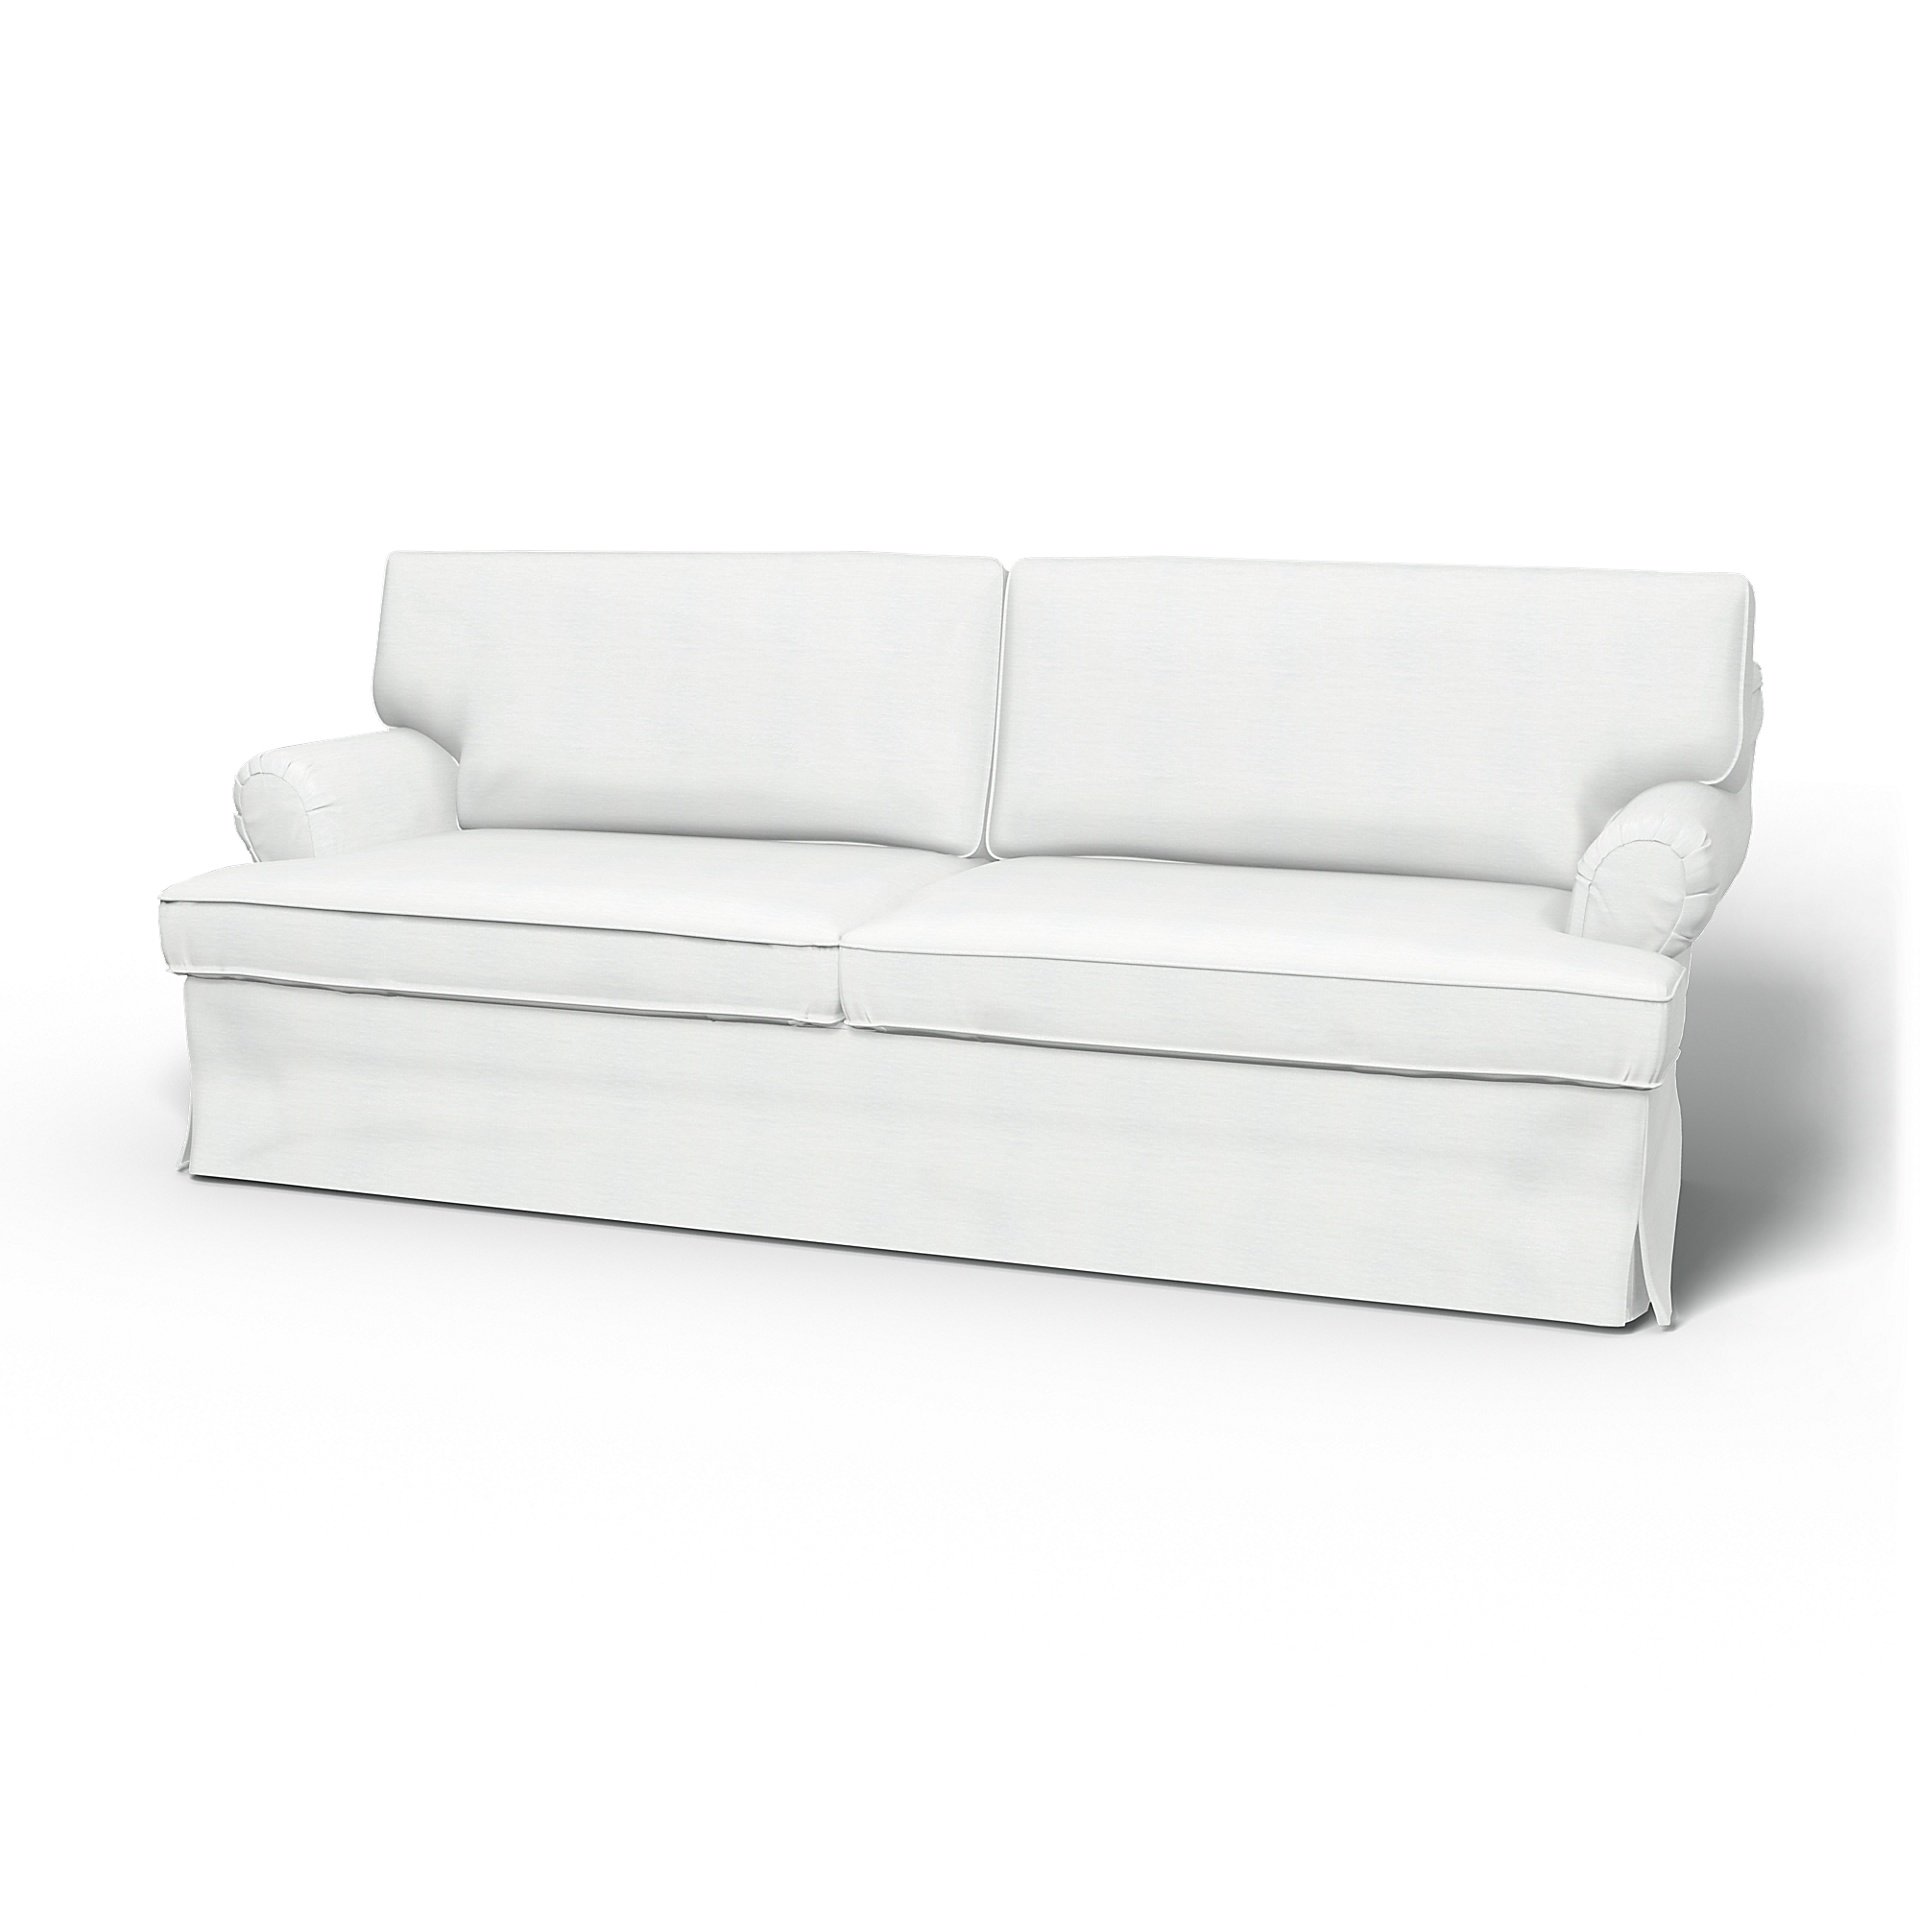 IKEA - Stockholm 3 Seater Sofa Cover (1994-2000), White, Linen - Bemz